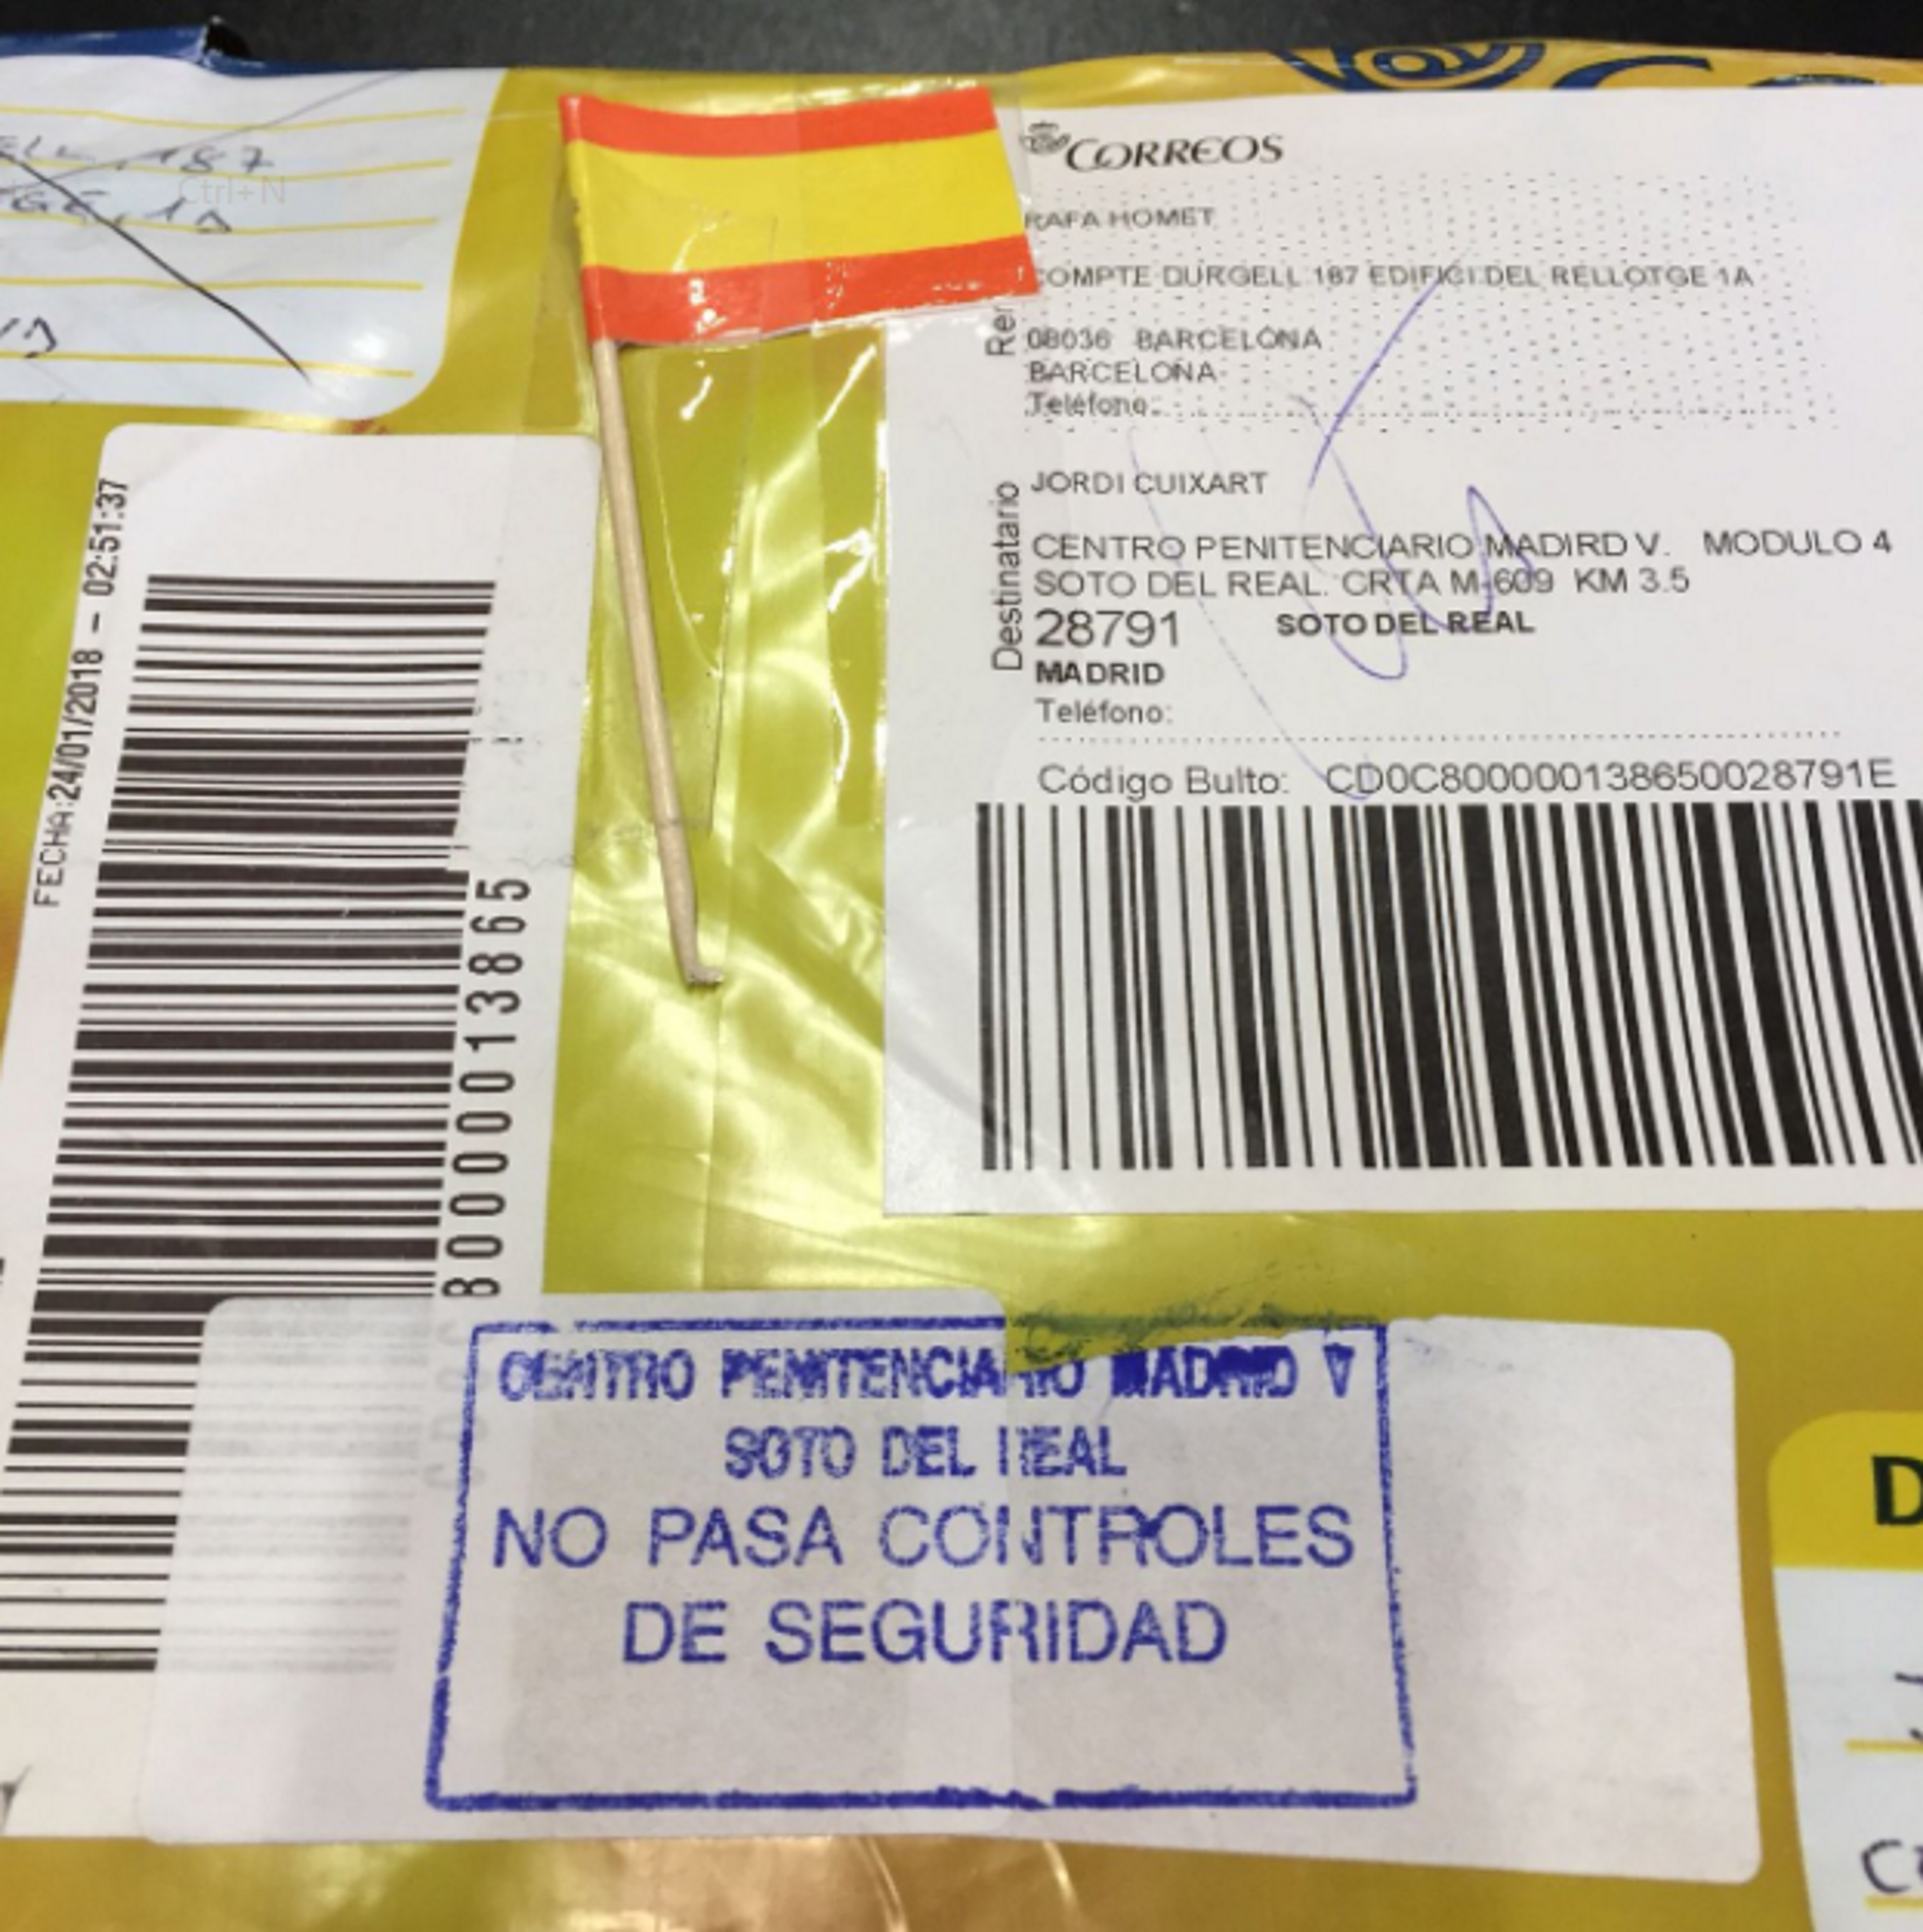 Vetan un libro enviado a Cuixart y lo devuelven con una bandera española